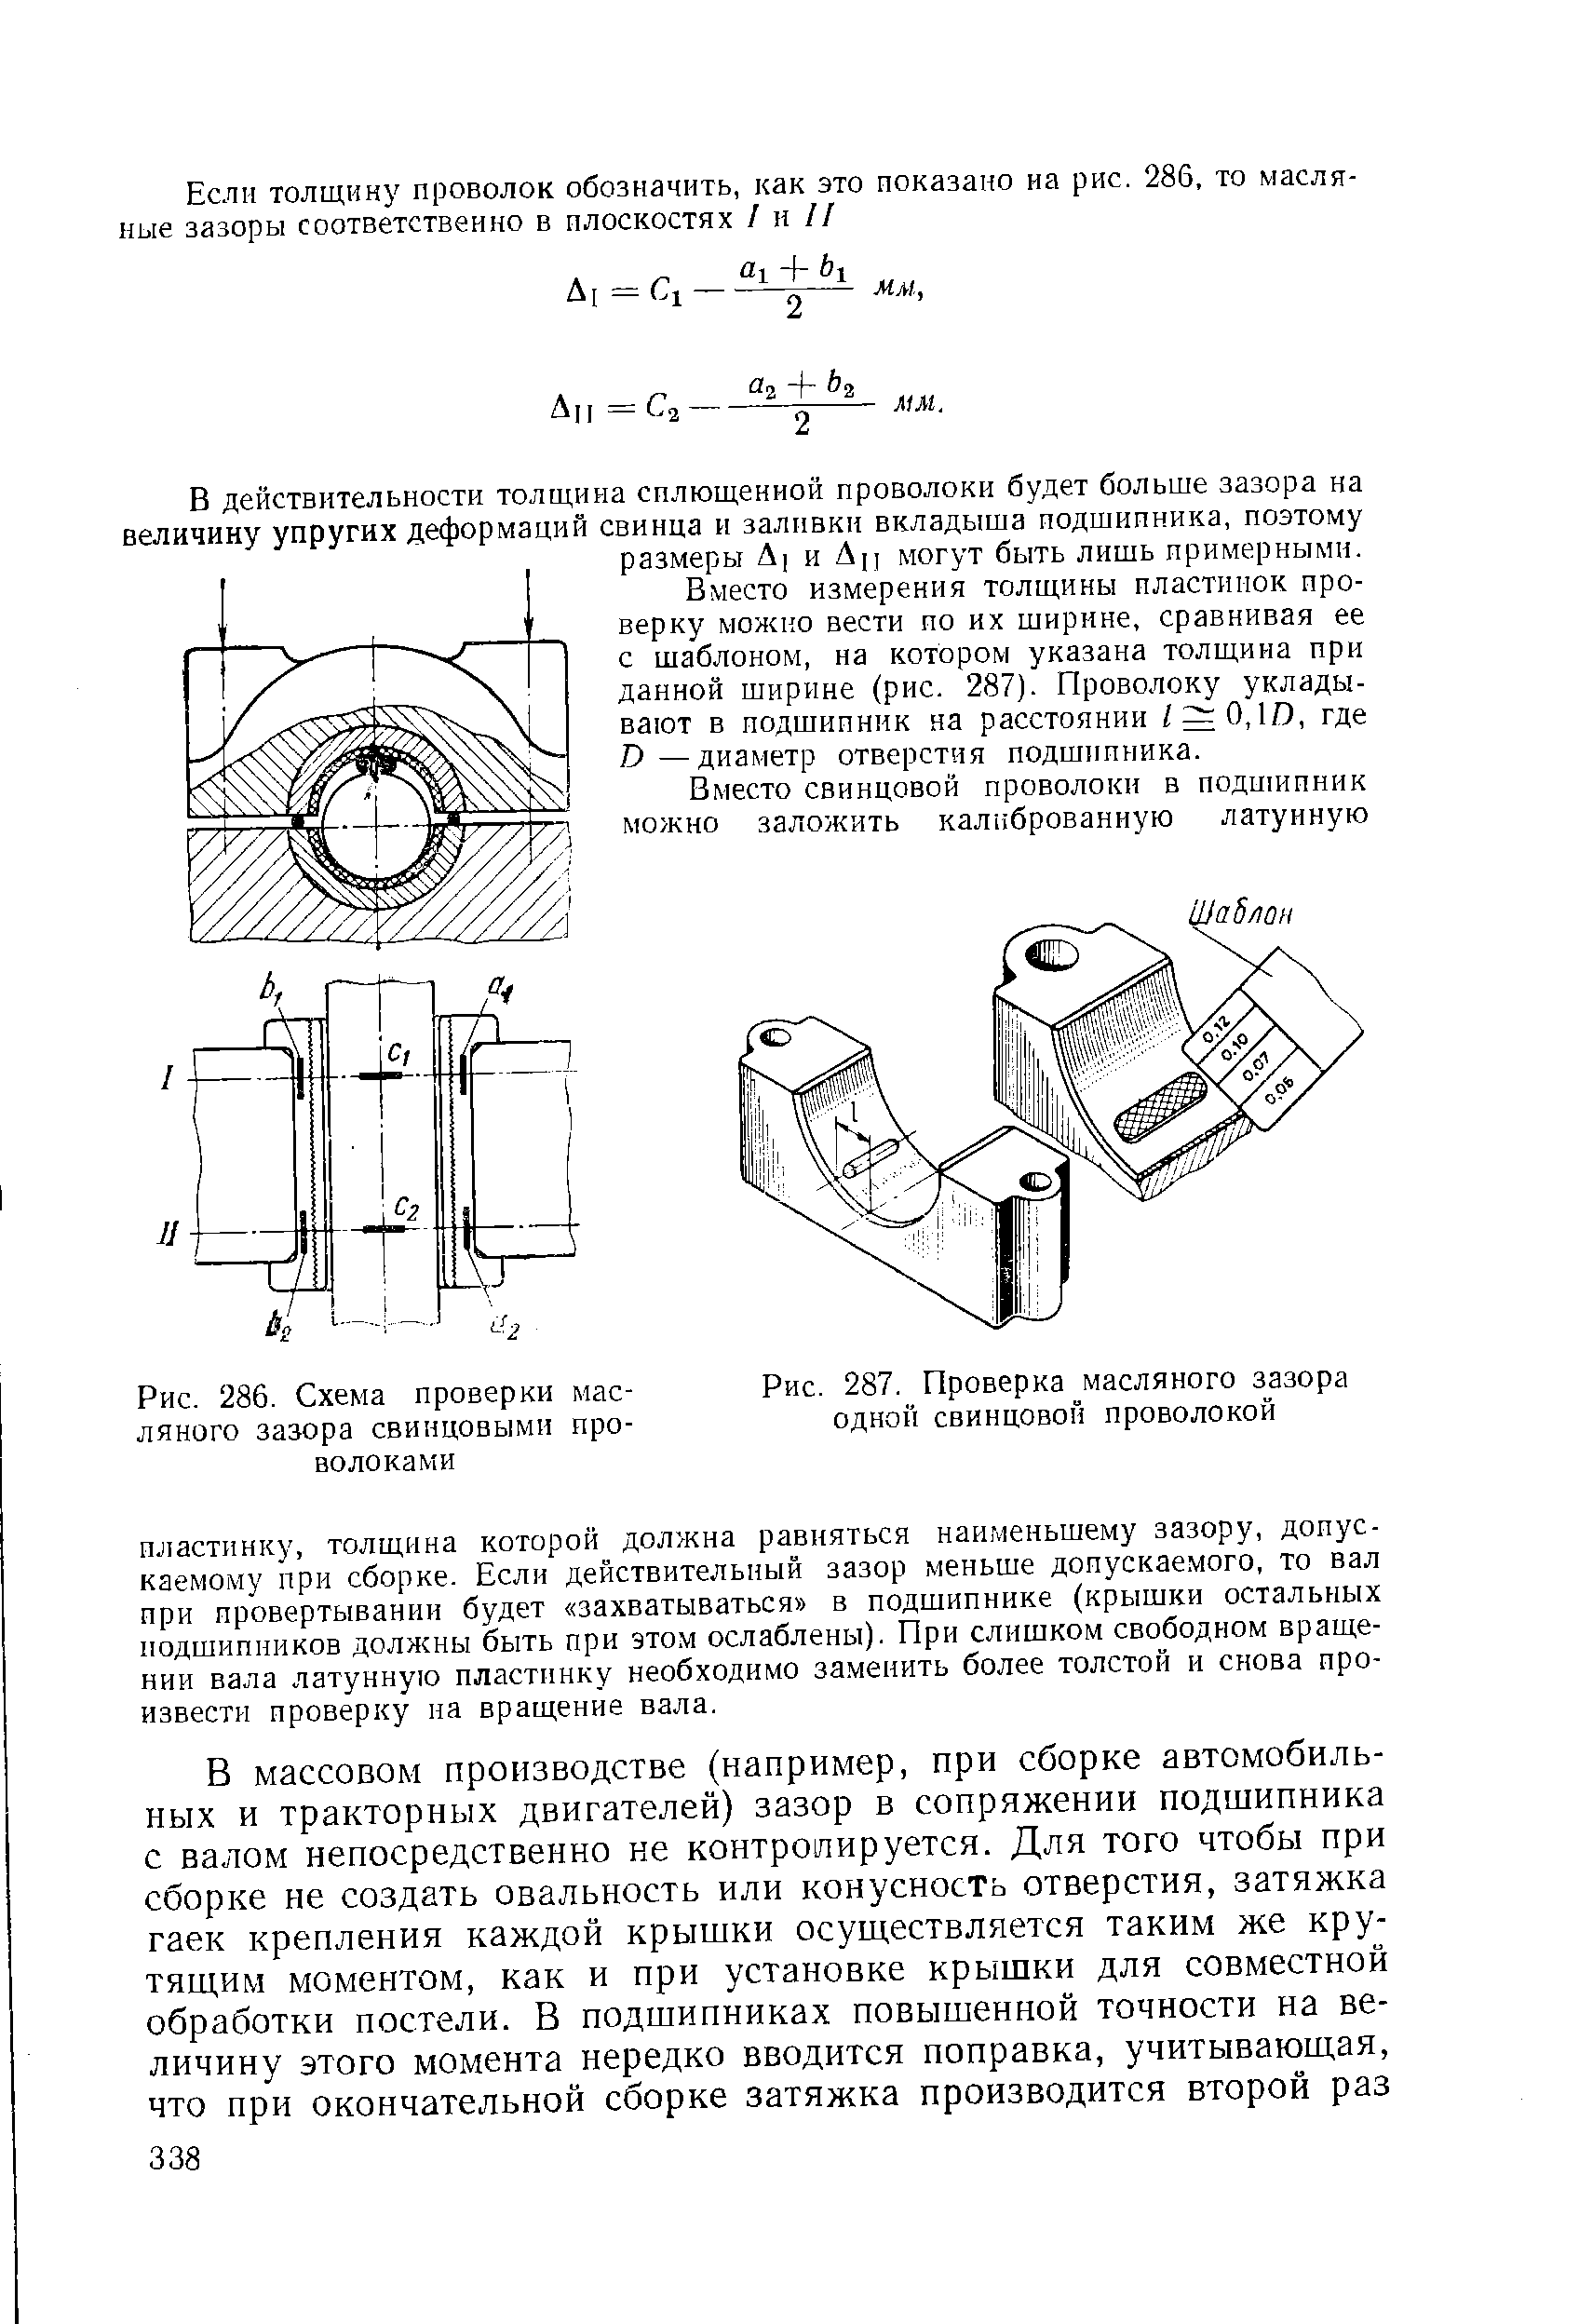 Рис. 286. Схема проверки масляного зазора свинцовыми проволоками
